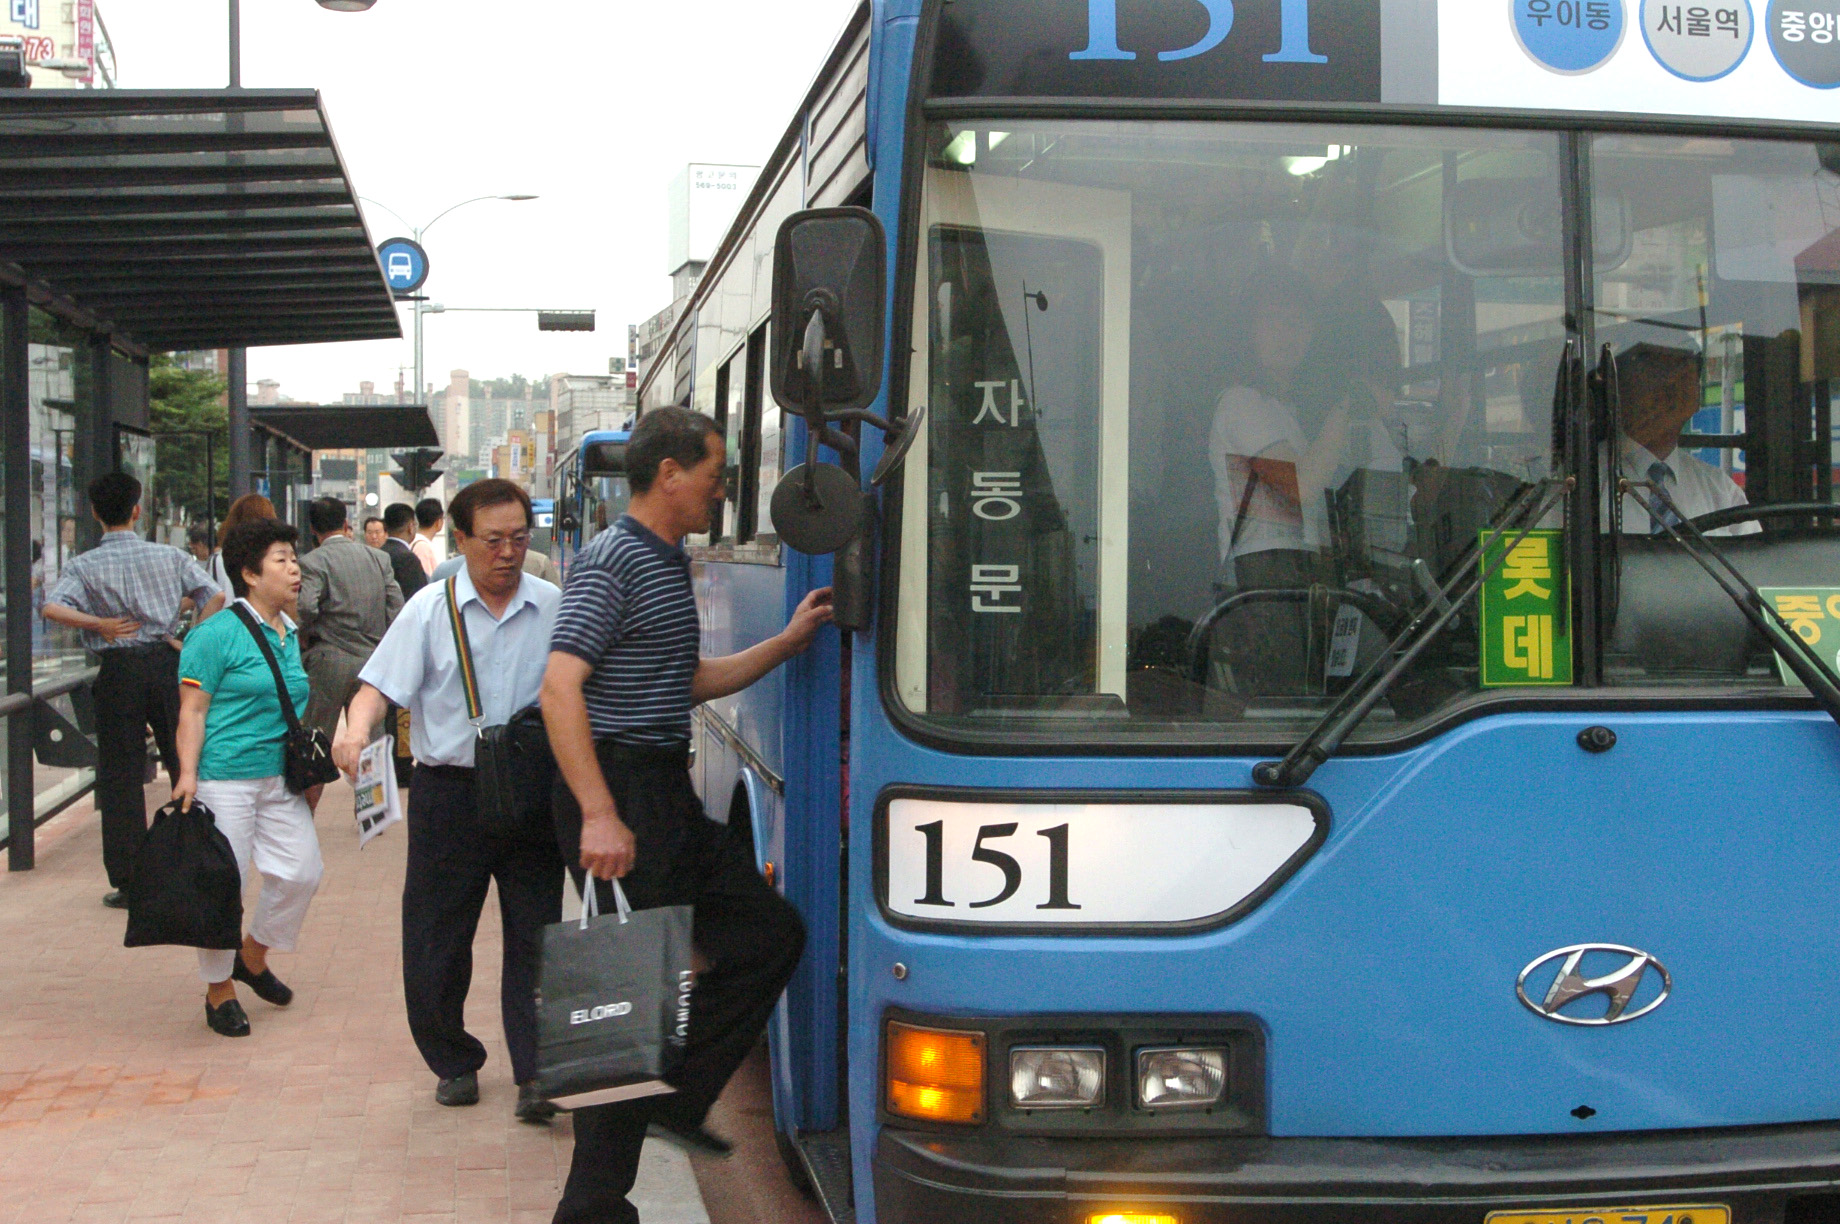 표준형 교통카드도 도입해 버스와 수도권 전철과의 연계시스템을 구축한다. 